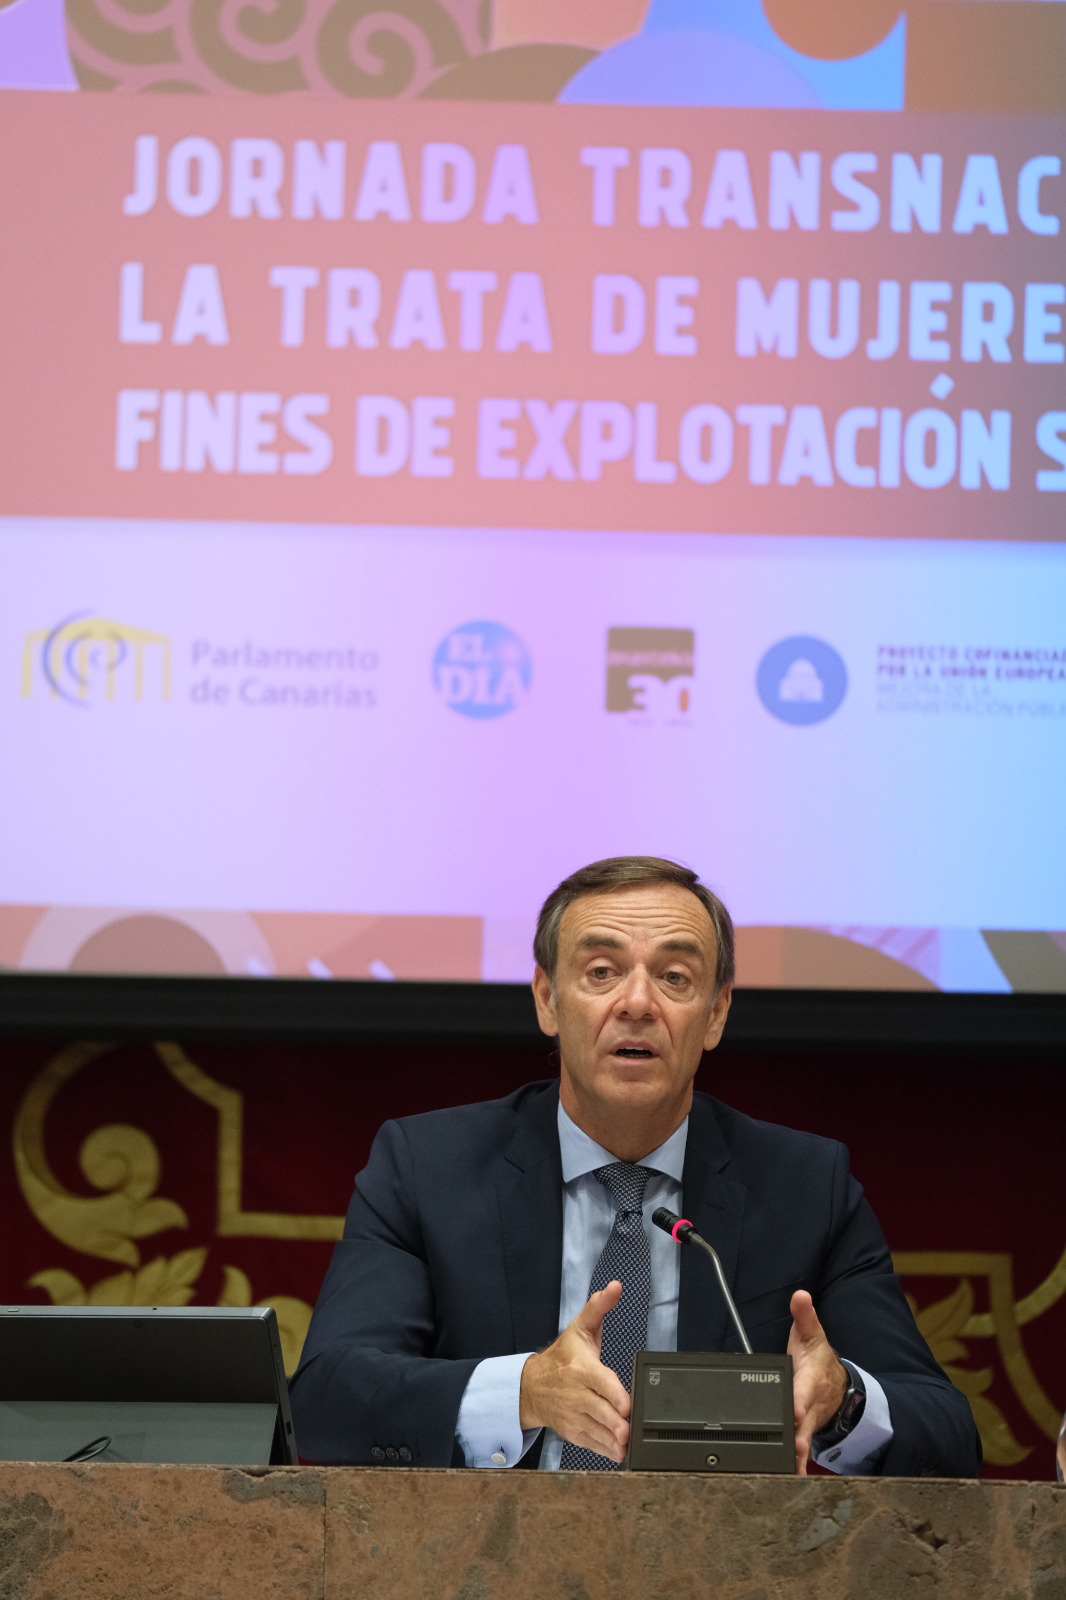 El ponente de la Jornada, el presidente de la Audiencia Nacional, José Ramón Navarro Miranda